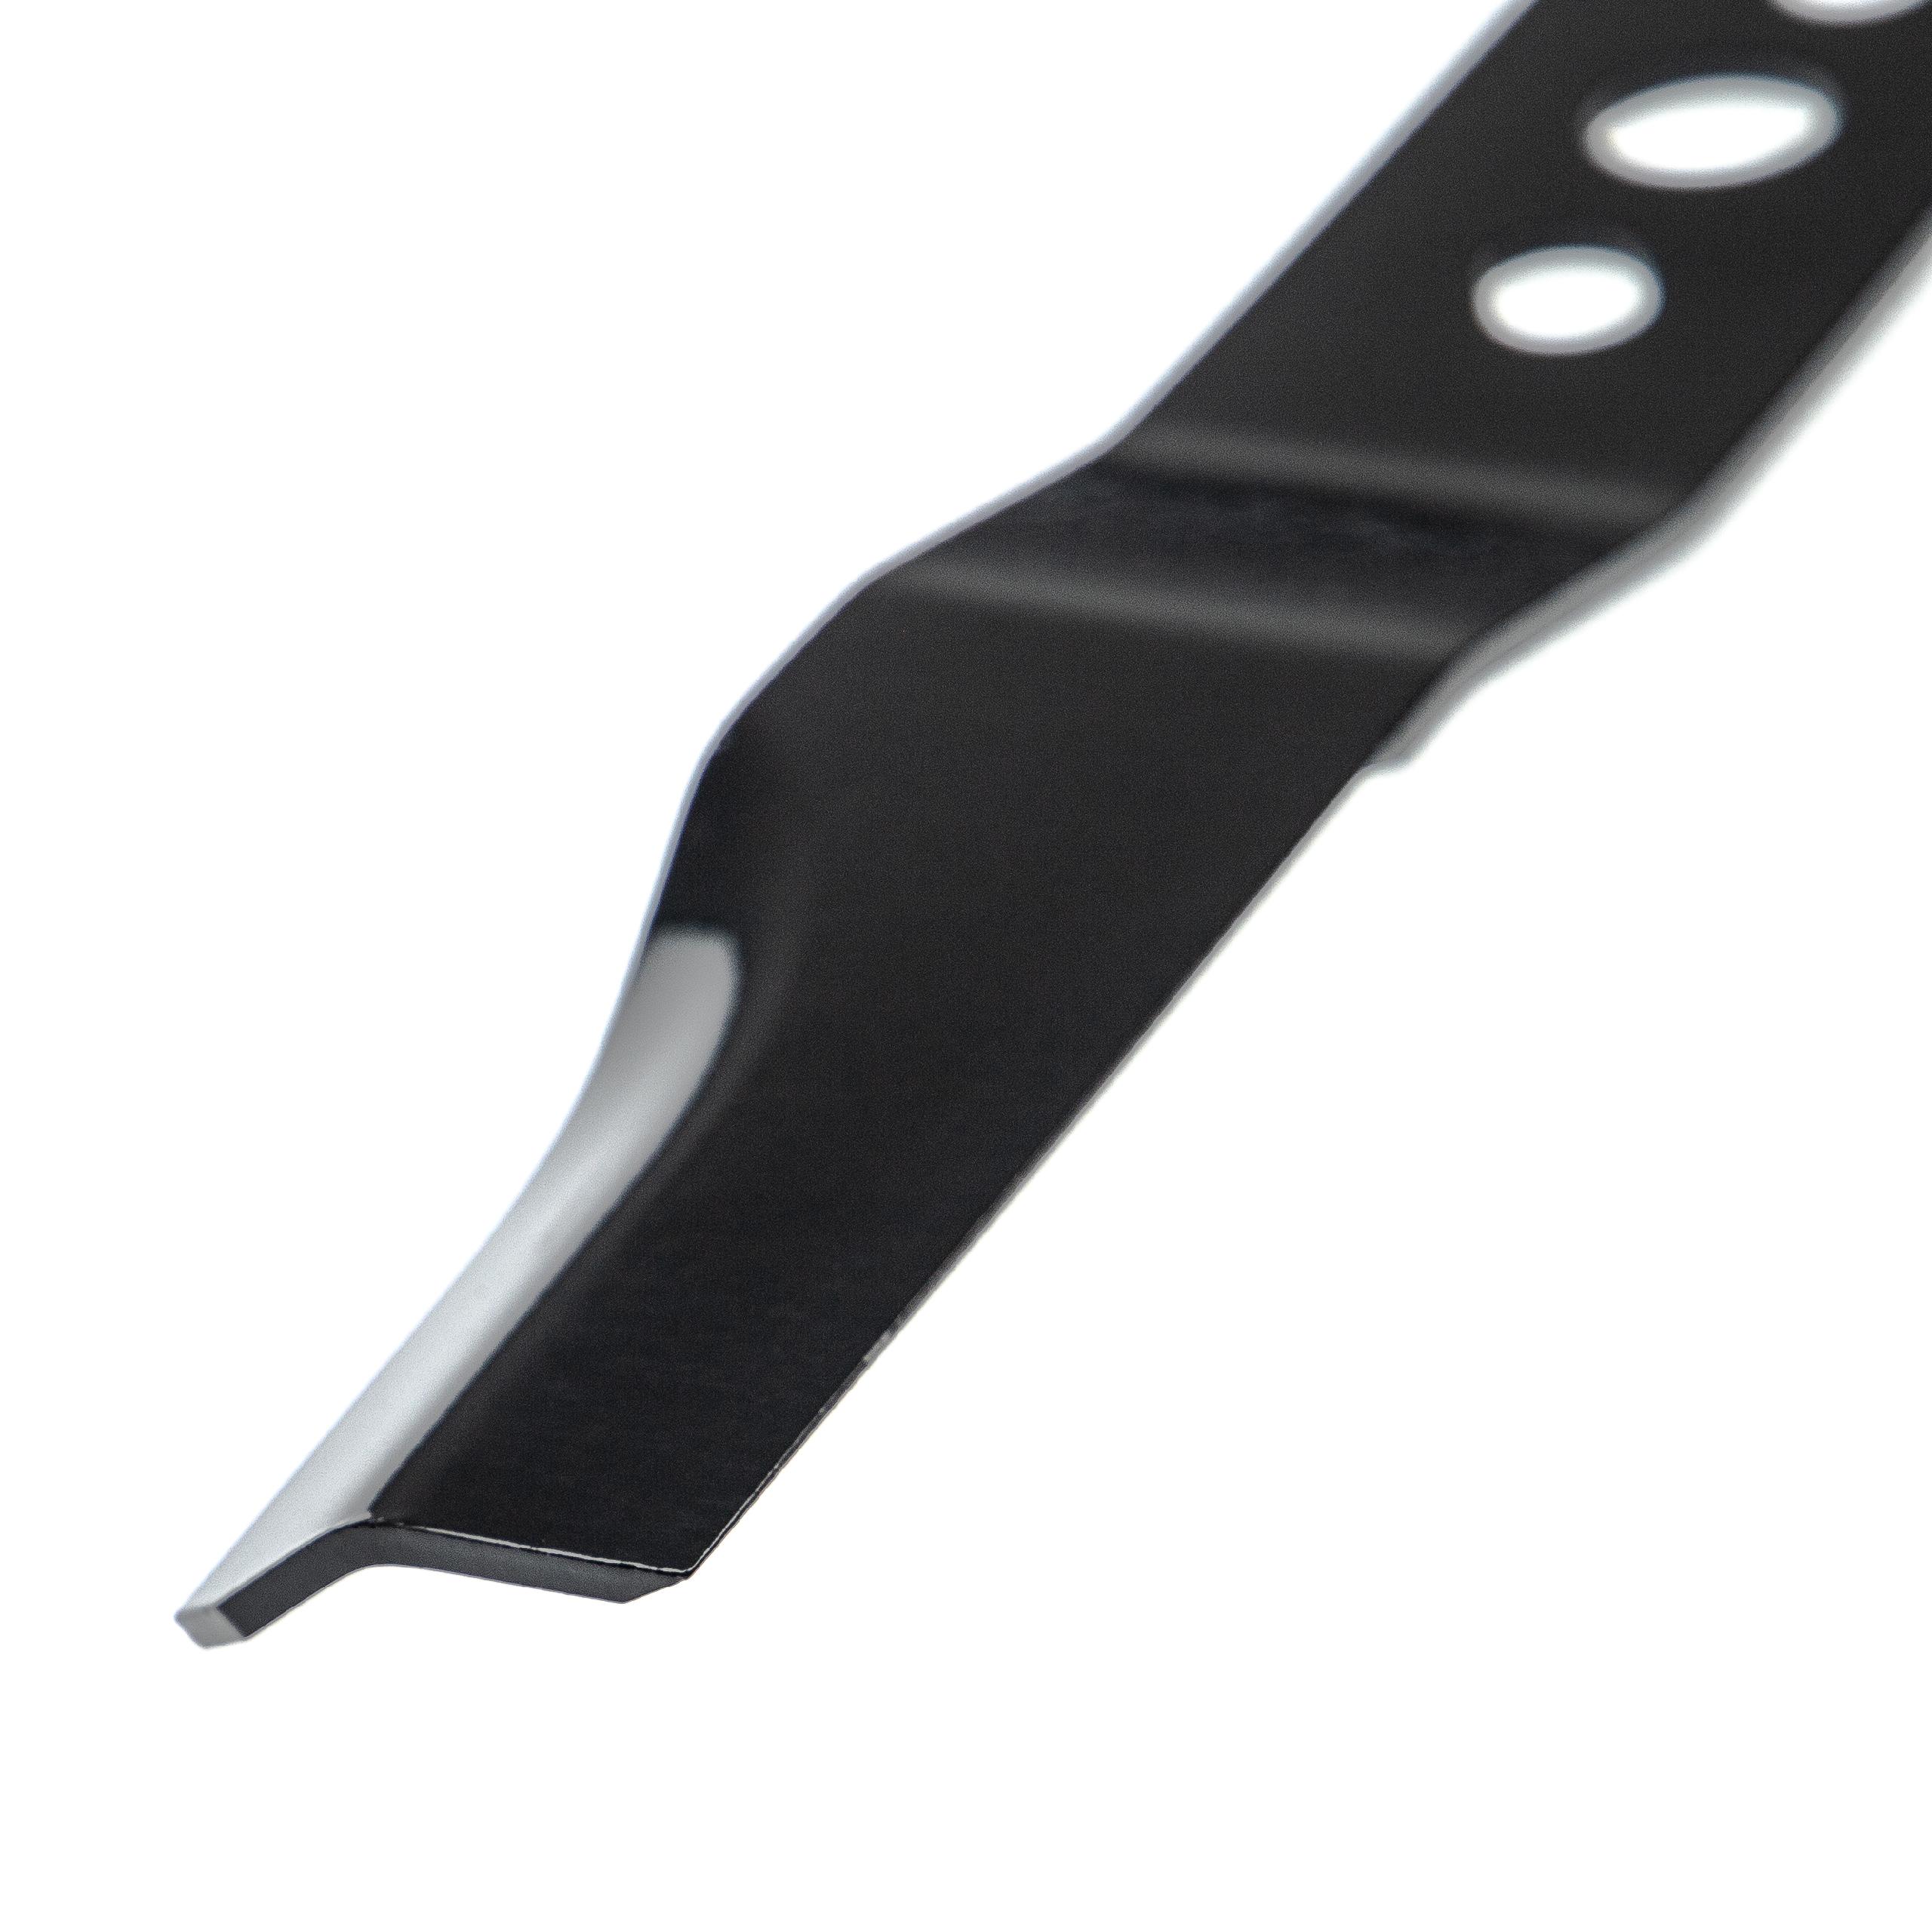 Messer als Ersatz für Brast 45/46cm Messer für Rasenmäher - Klinge